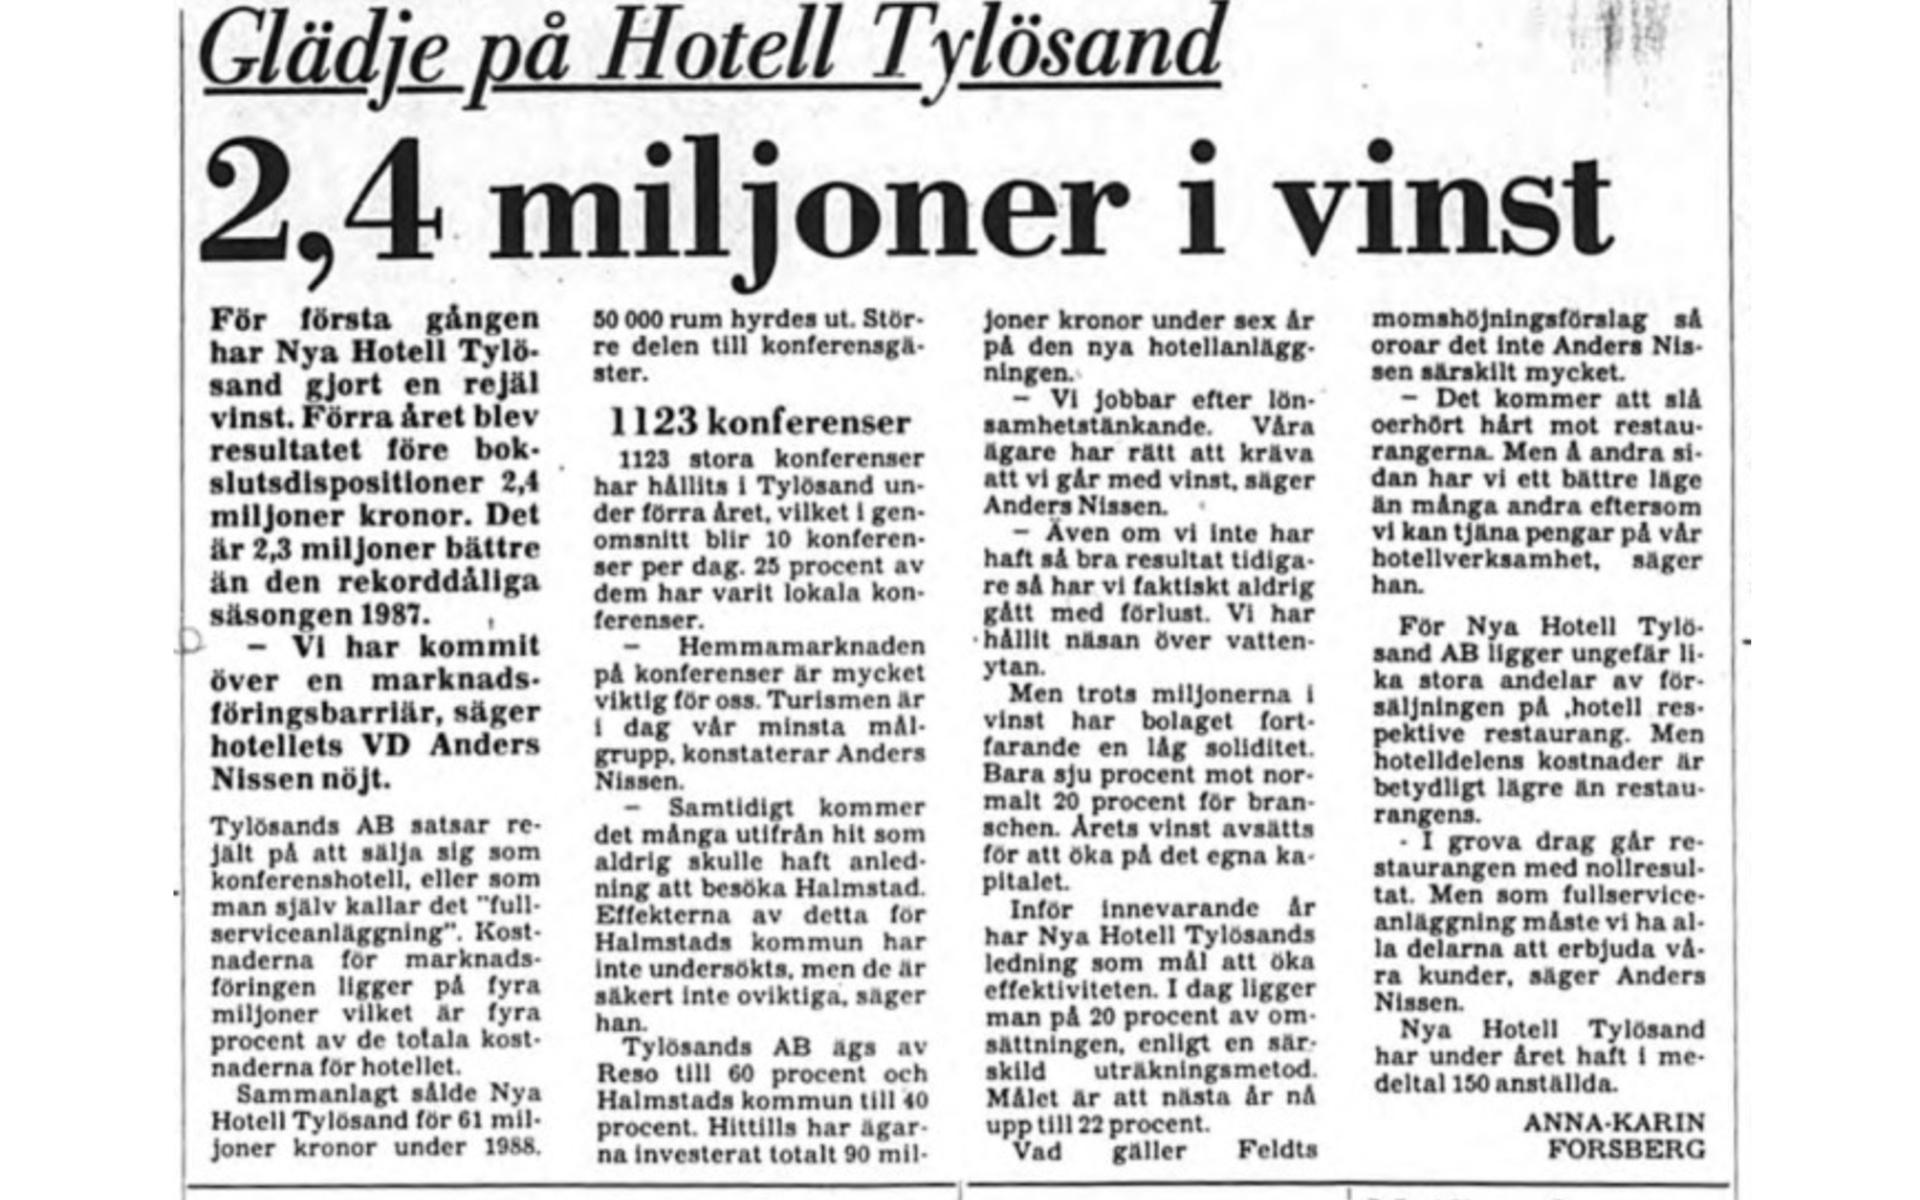 1989 såg Hotell Tylösand ut att gå helskinnade ur Halmstads stora hotellkrig. Nu gjorde man en rejäl vinst för första gången, berättade HP:s Anna-Karin Forsberg. 